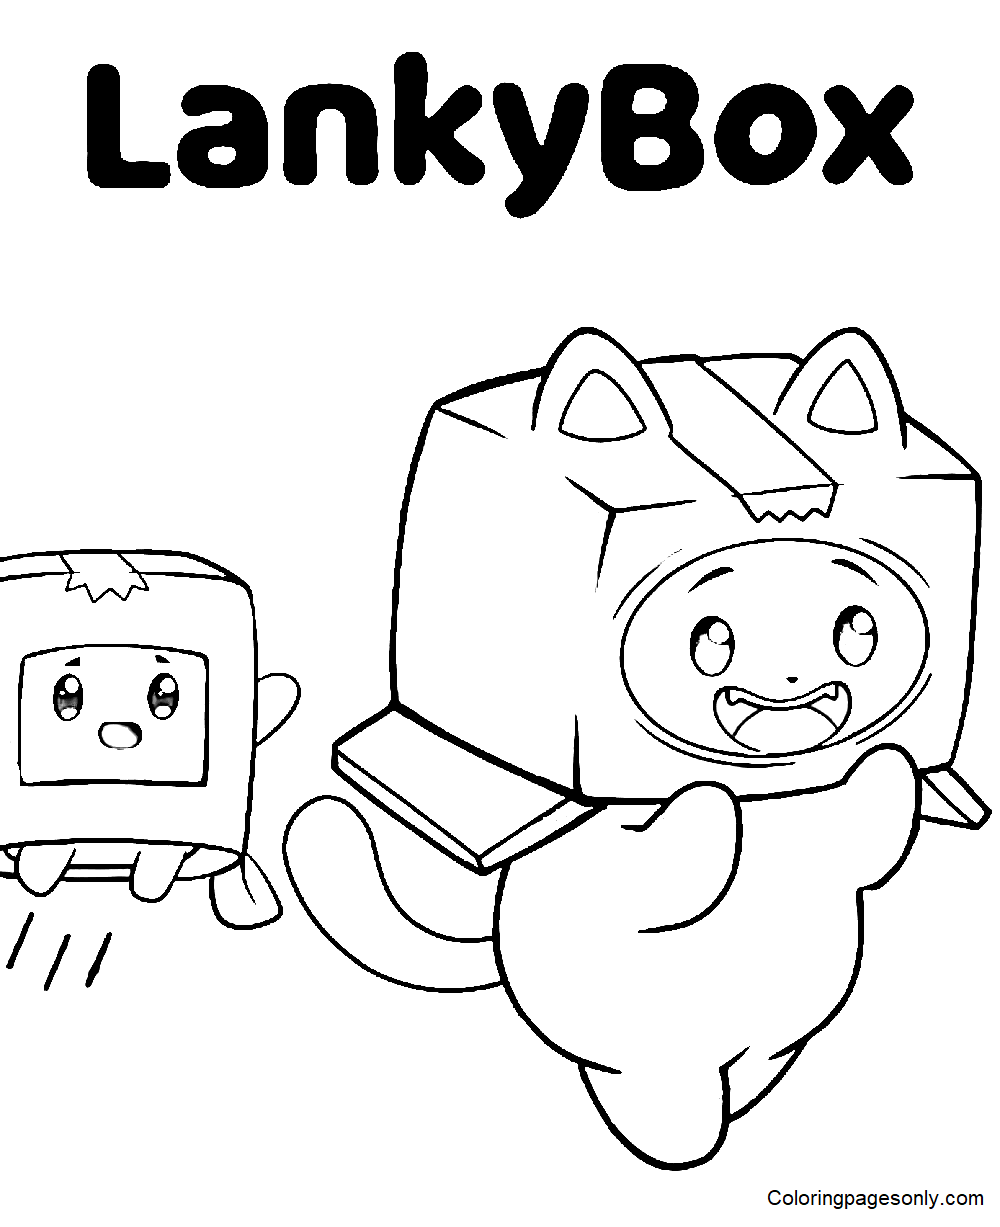 Druckbare LankyBox-Blätter Malvorlagen